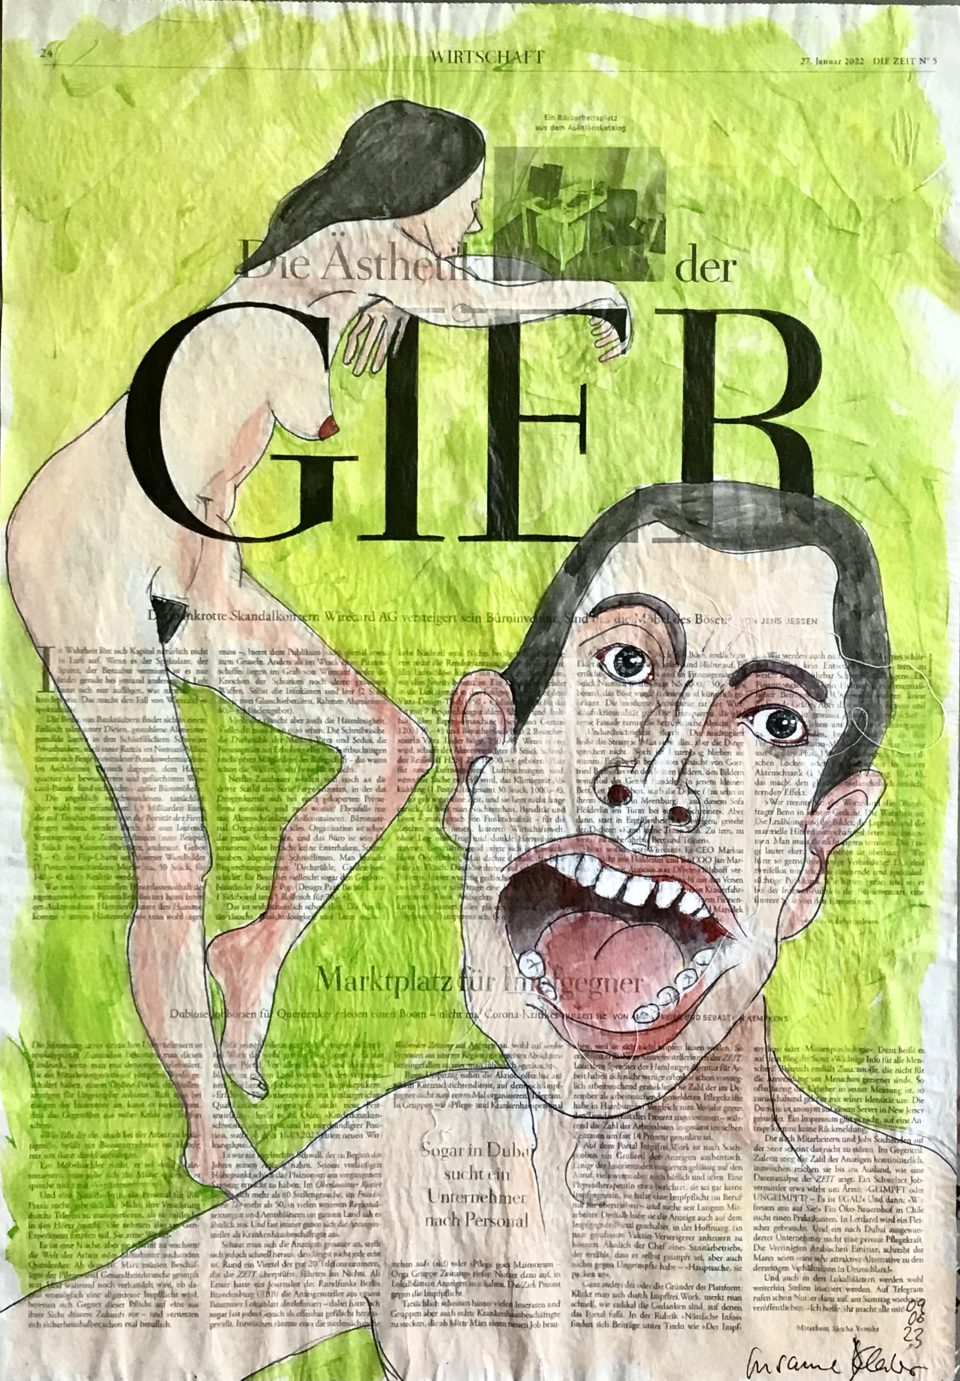 Gier – zwei Akte, vorne groß männlich mit aufgerissenem Mund, hinten weiblich im Profil, stehen, auf ganzer Zeitungsseite 56 x 40 cm mit Überschrift Gier